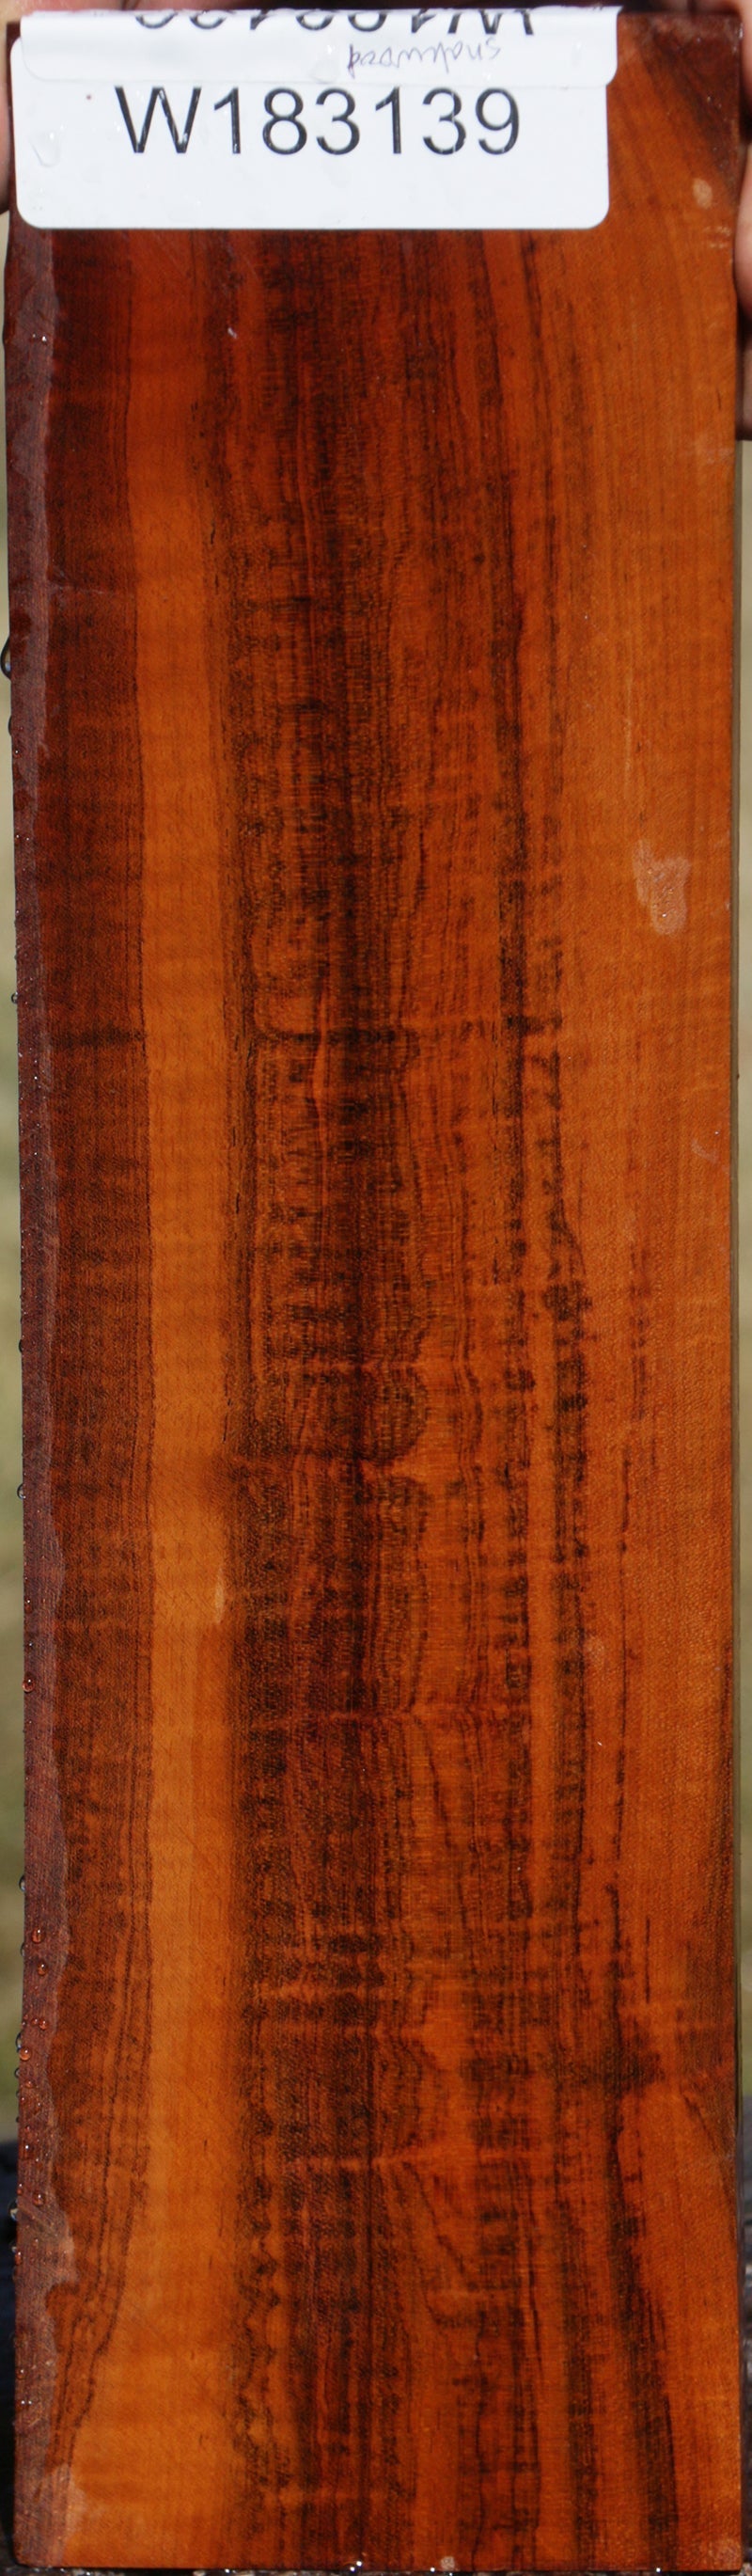 Snakewood Micro Lumber